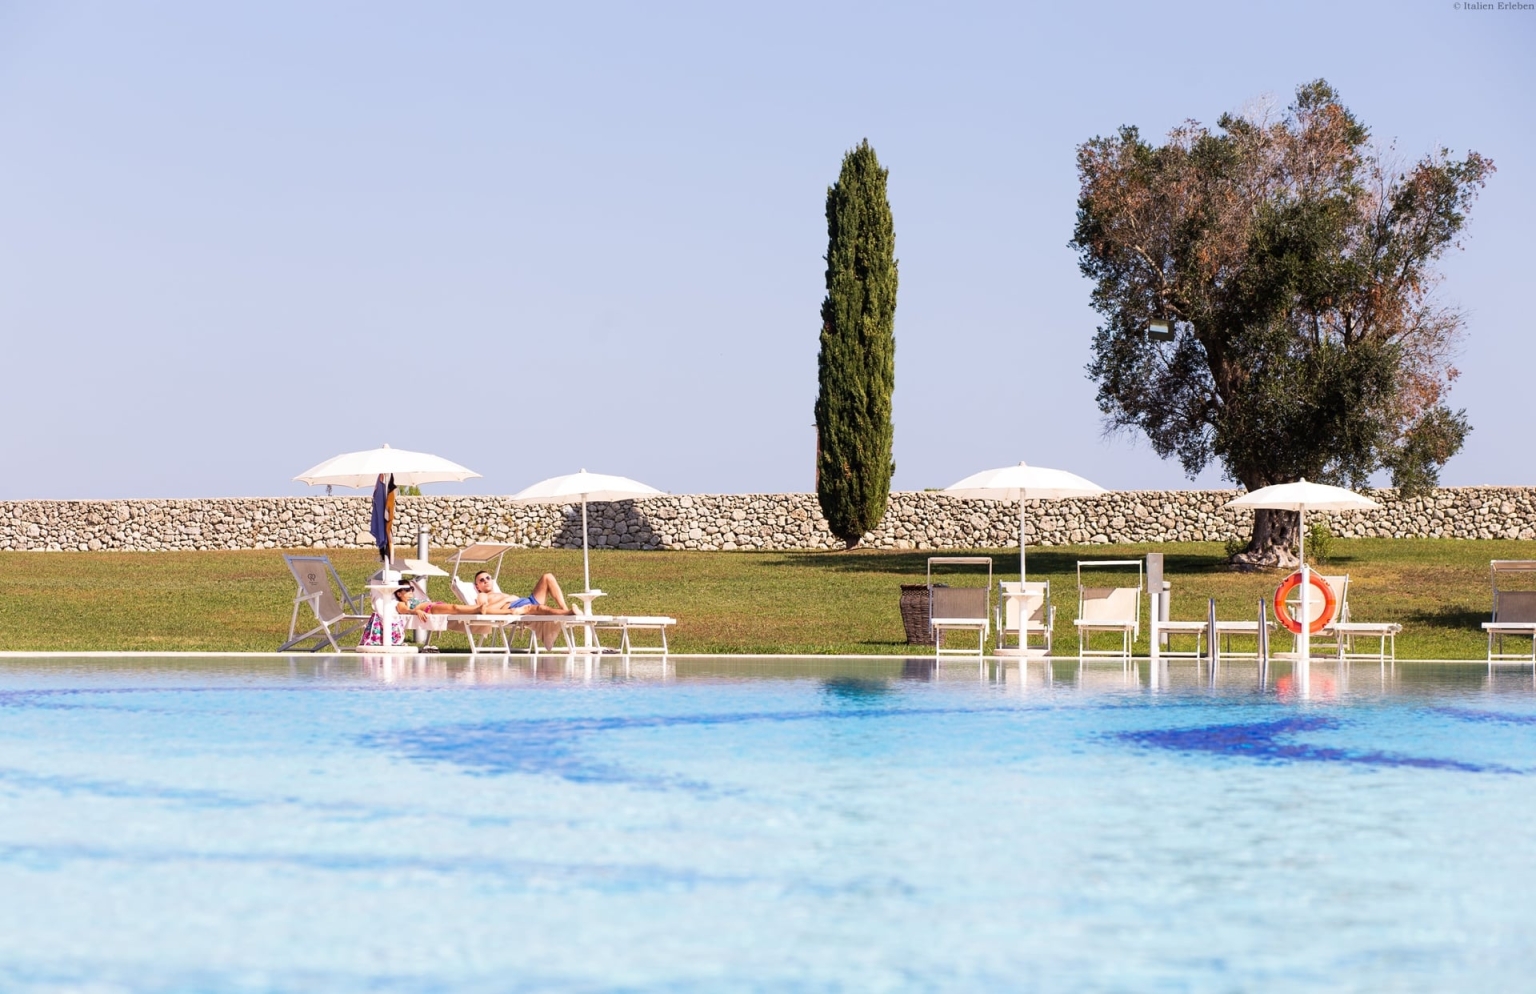 Apulien Golf Resort Acaya Lecce Salento 18 Loch Anlage modern Landschaft Wellness Pool